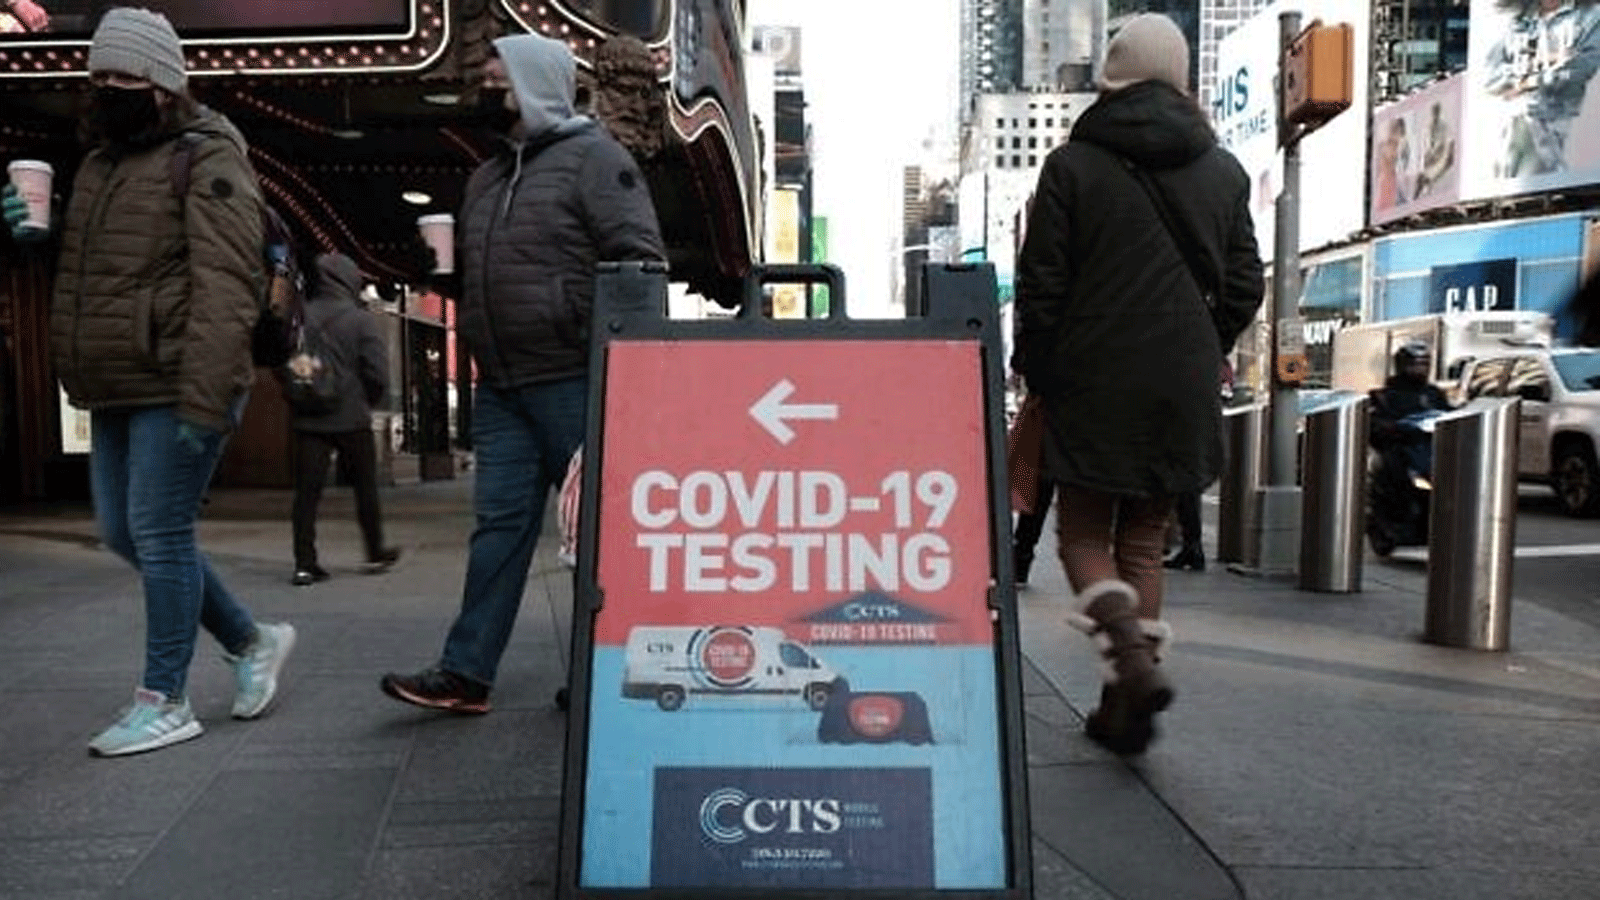 أشخاص يجتازون موقع اختبار COVID-19 في أحد شوارع مانهاتن، 21 كانون الثاني\يناير 2022، في مدينة نيويورك.